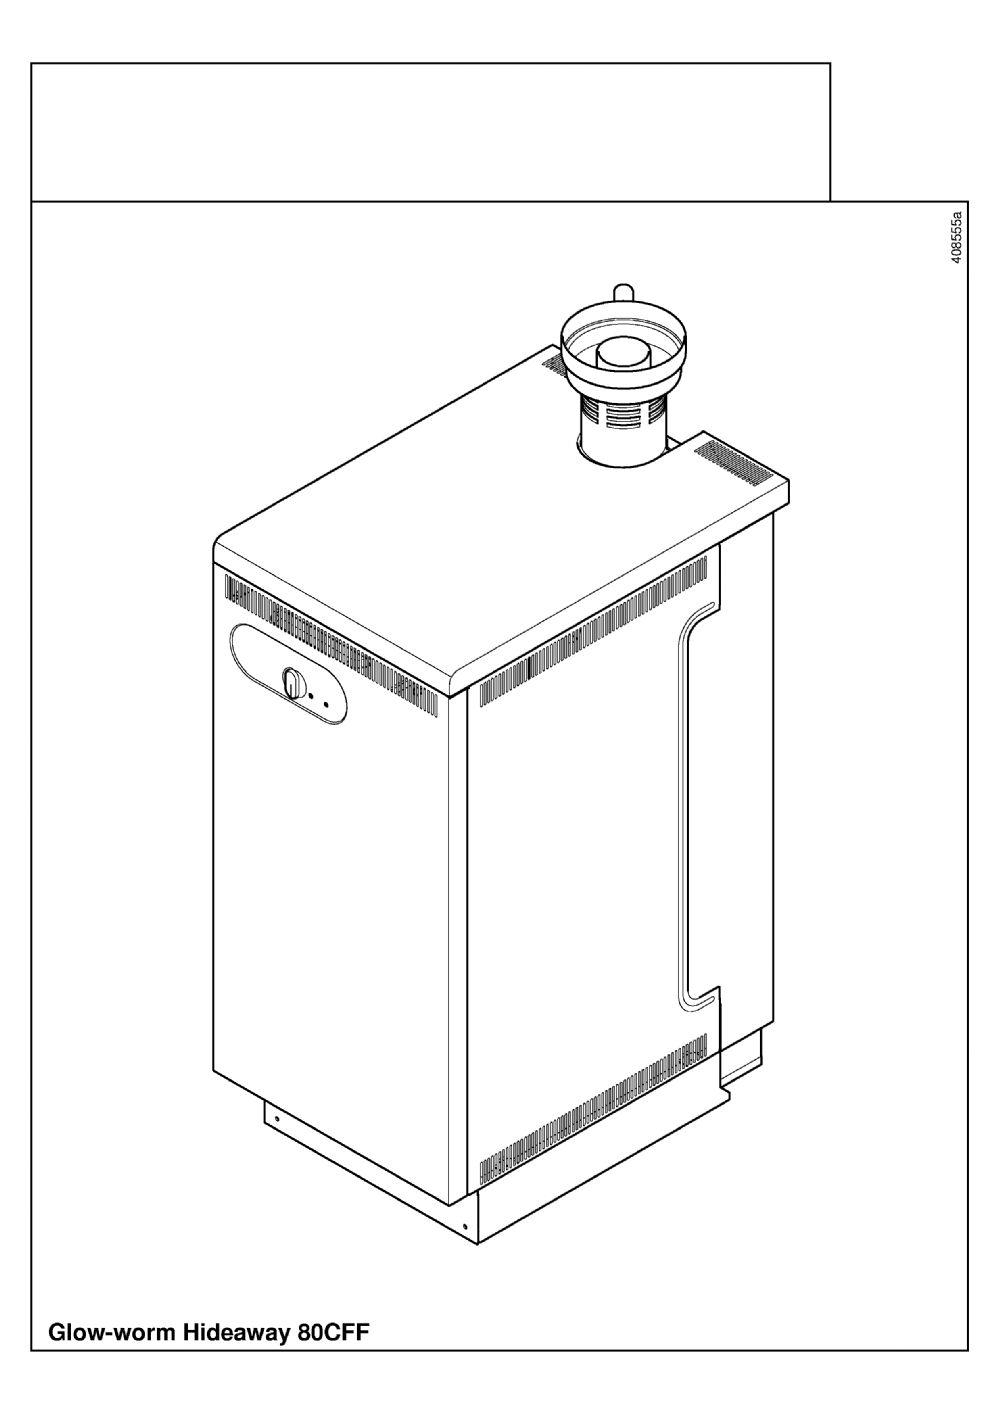 Hideaway 80C FF - appliance_2302